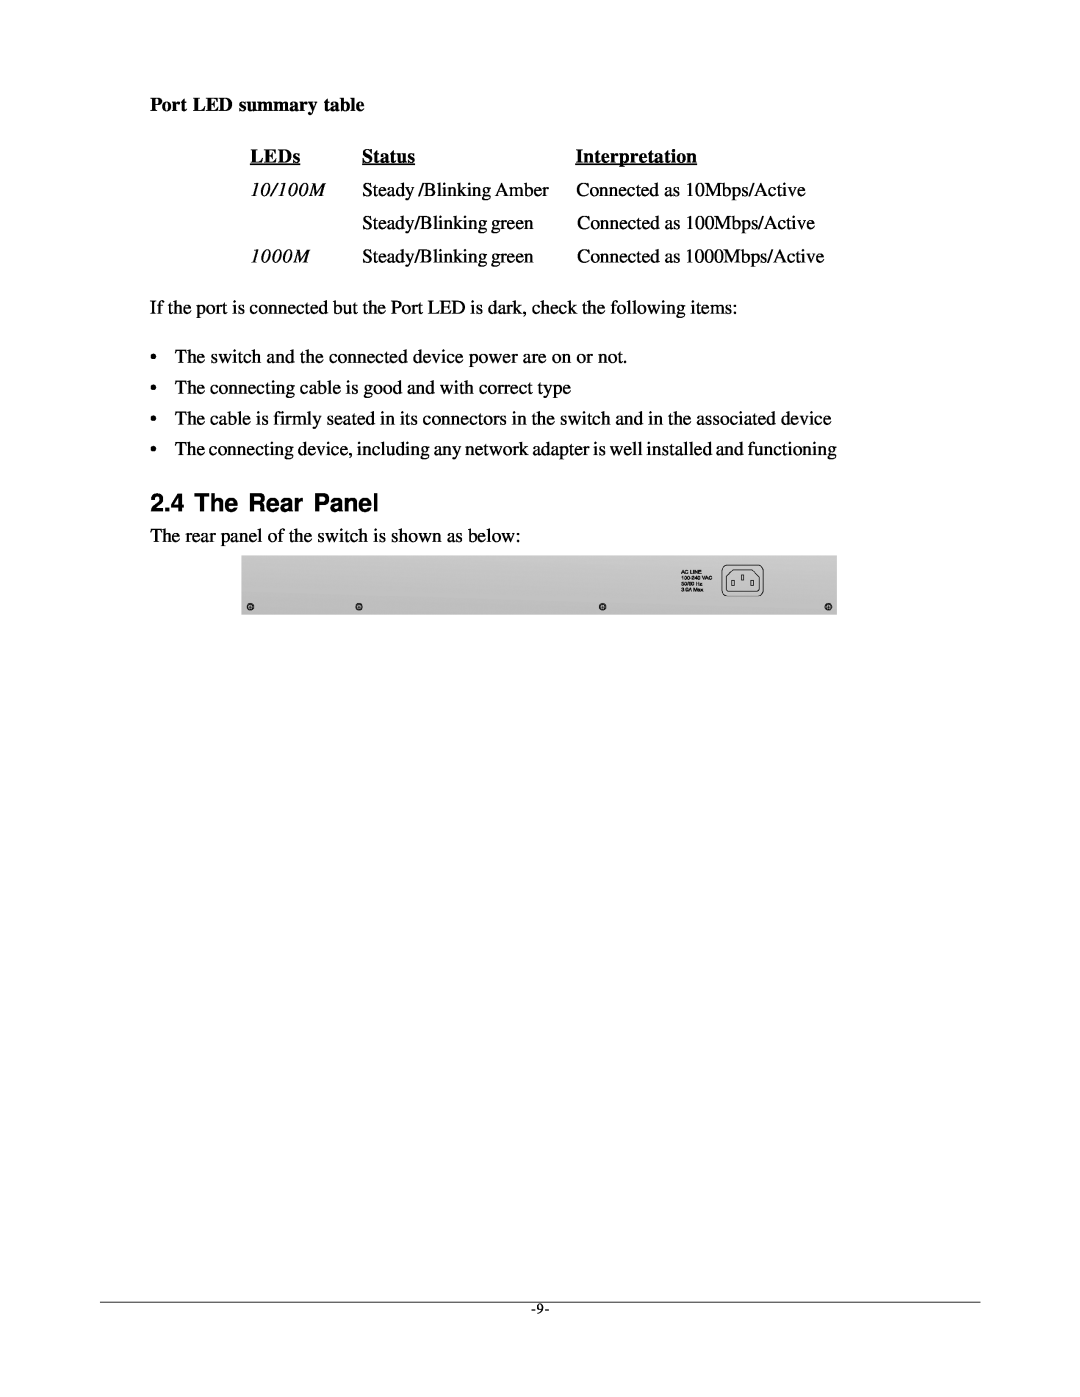 KTI Networks kgs-1601 manual The Rear Panel, Port LED summary table, LEDs, Status, Interpretation 